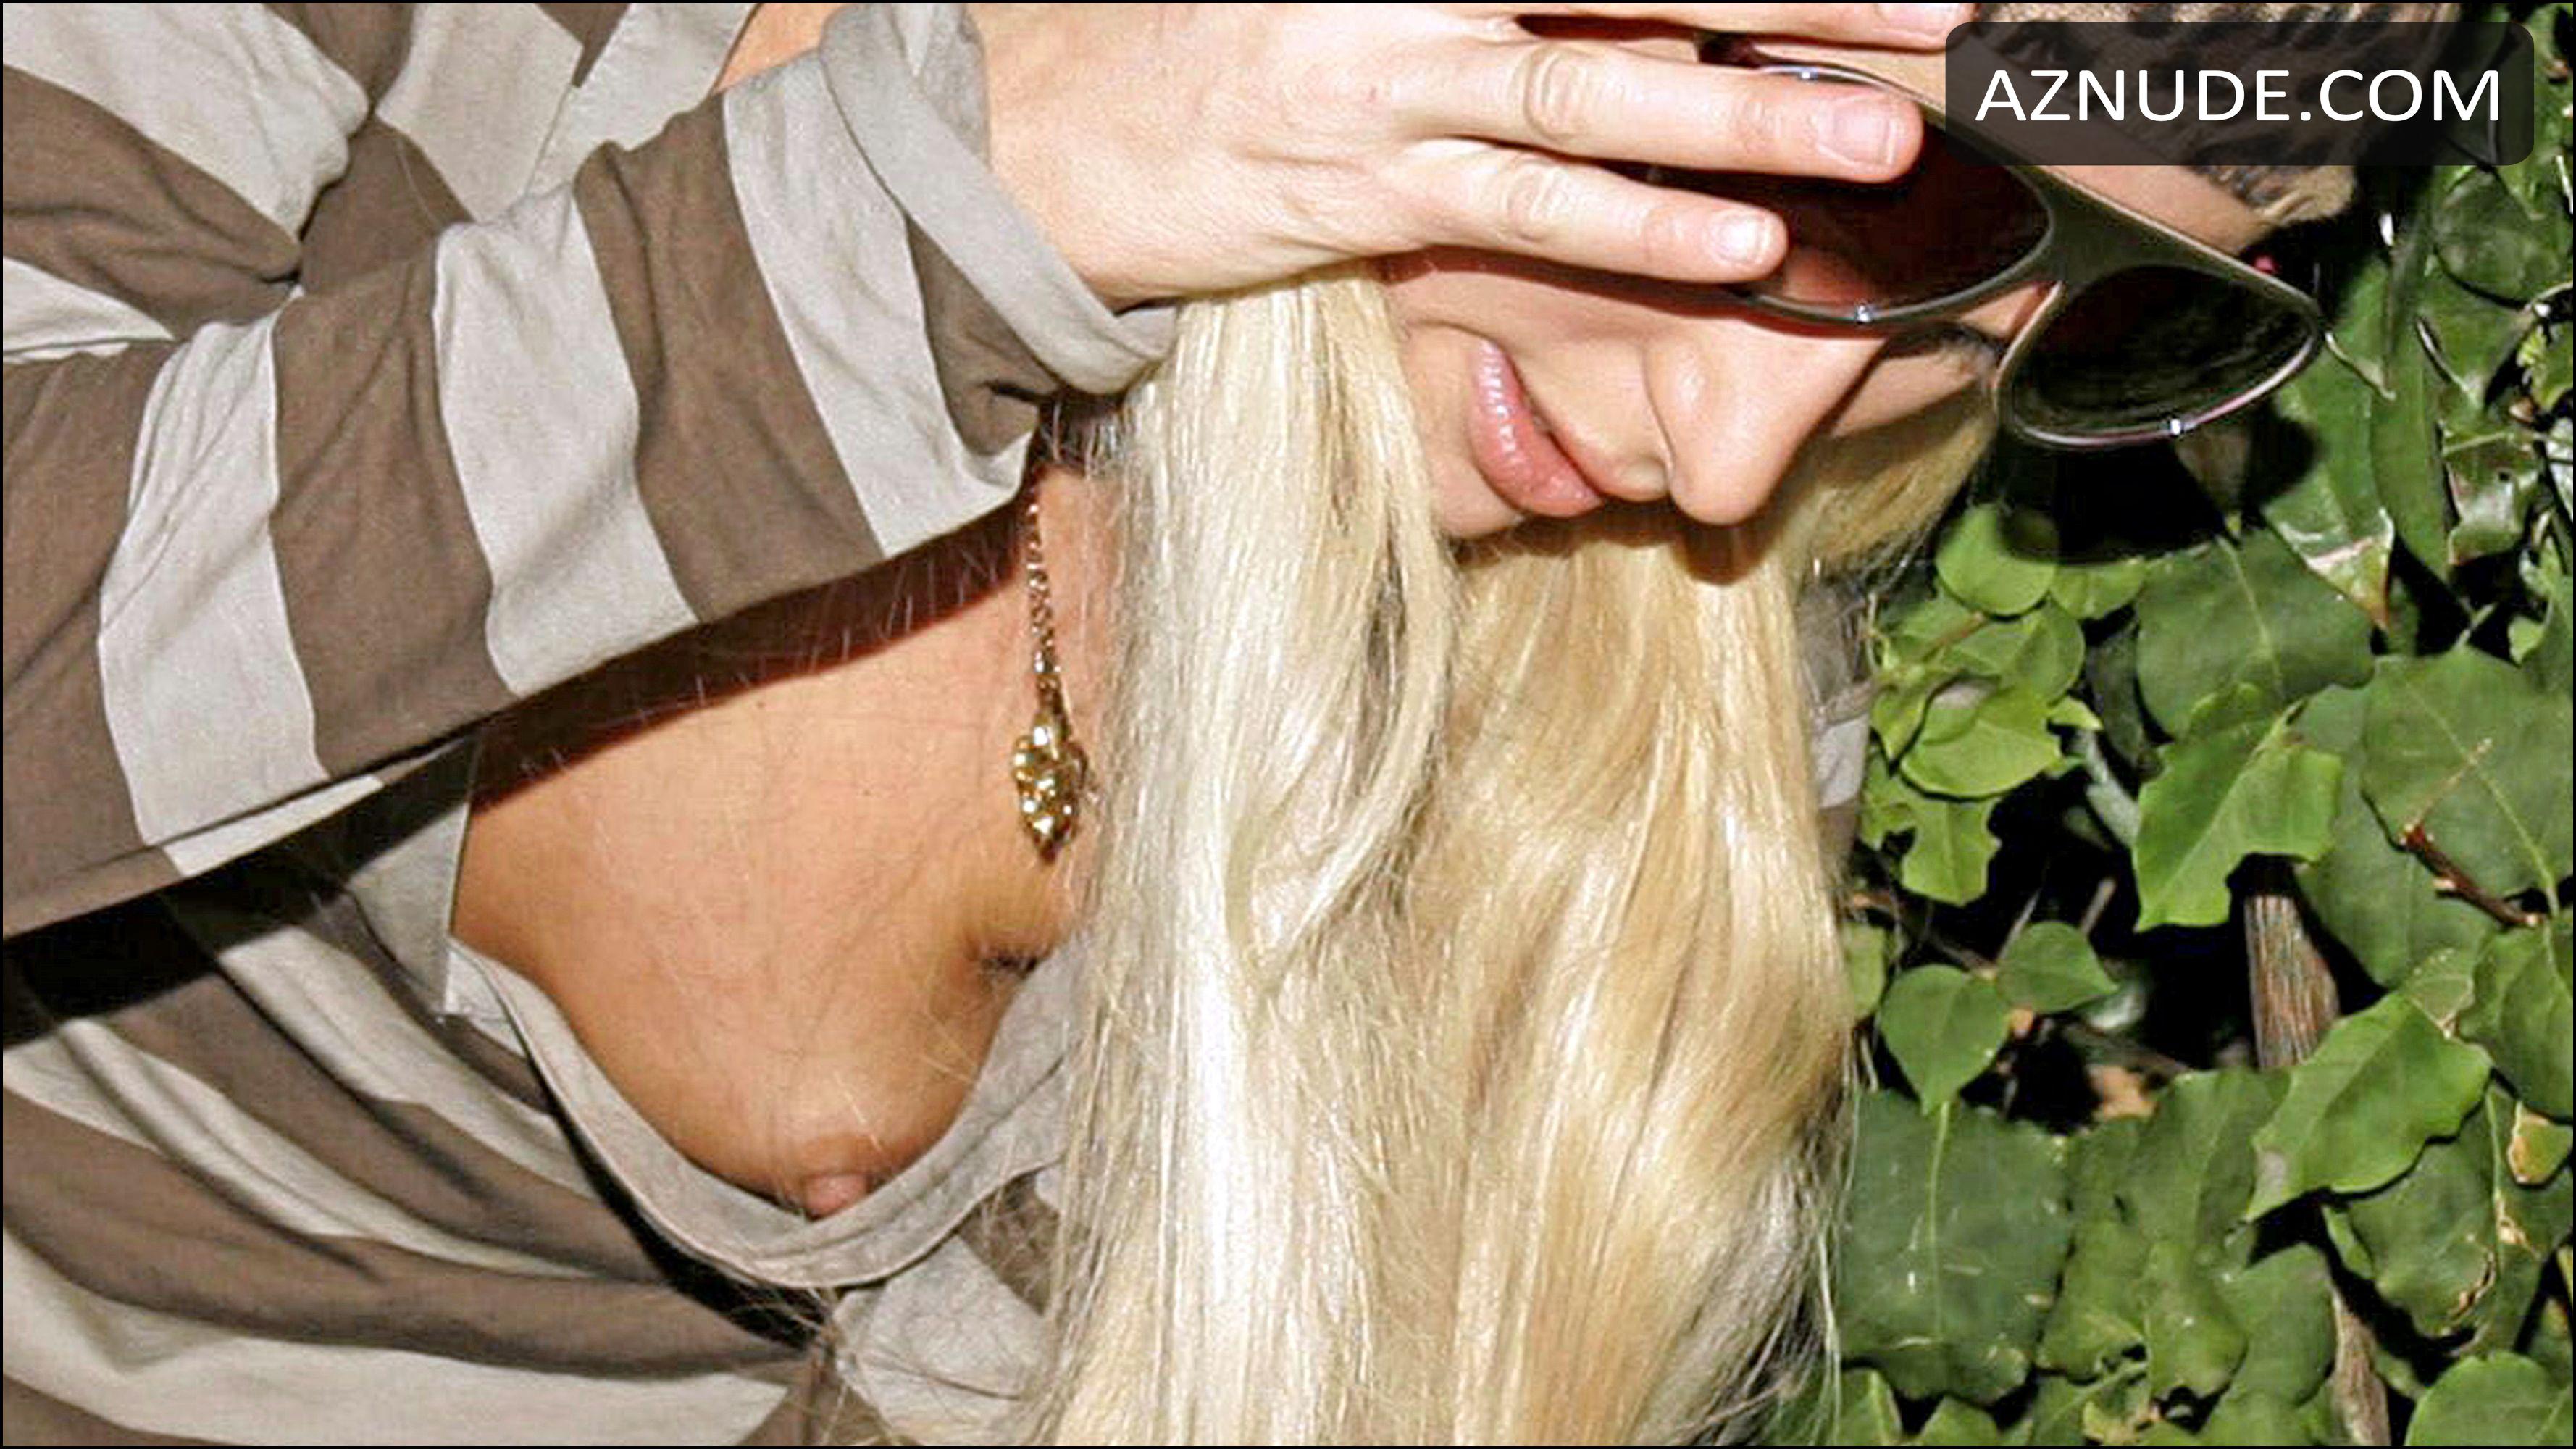 Uncensored paris hilton boob slip photos